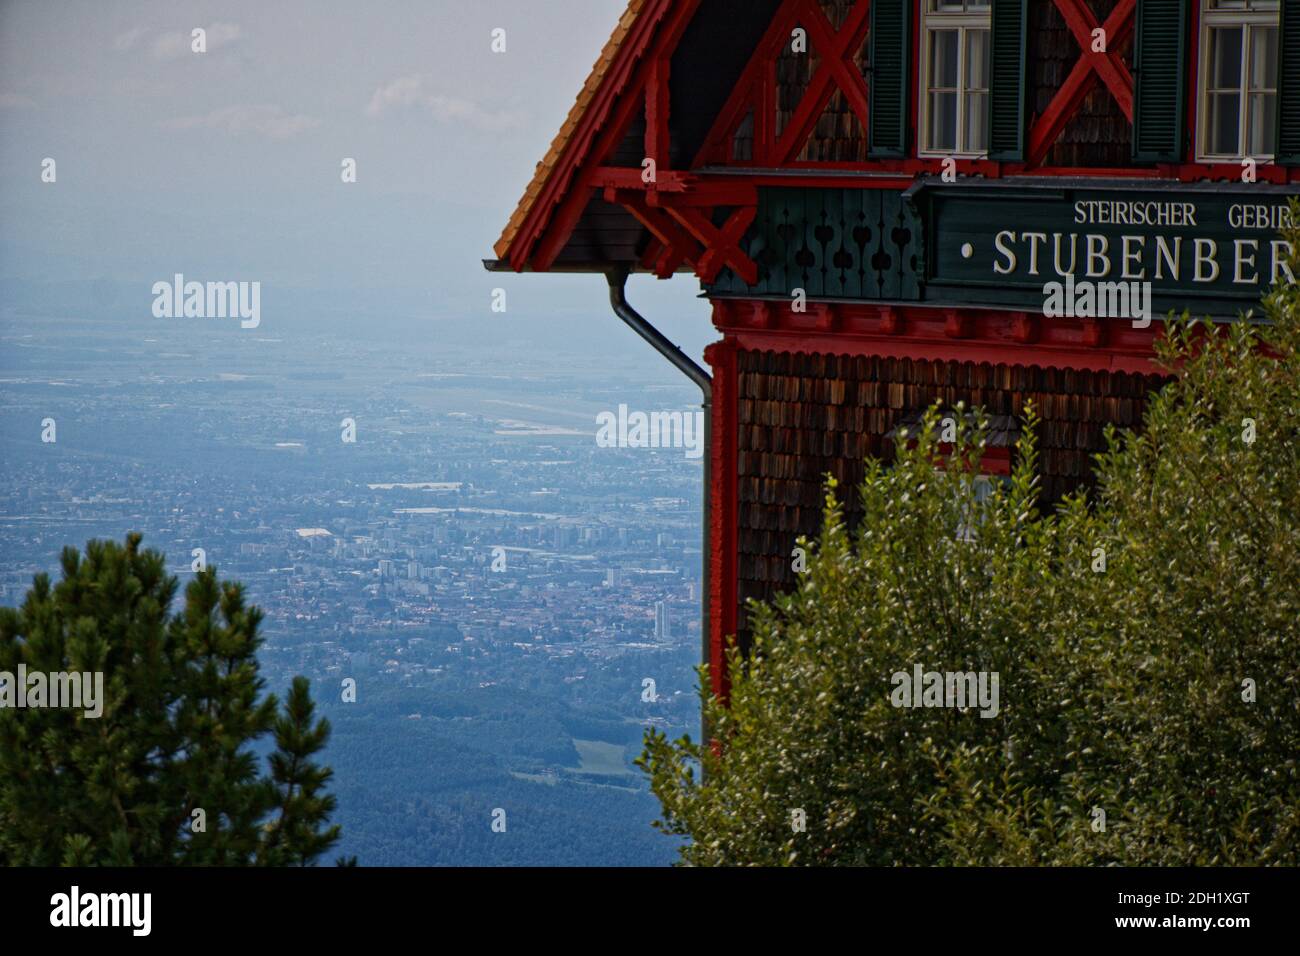 Nahaufnahme auf einer Berghütte 'Stubenberghaus' am Schockl Berg in Österreich Stockfoto